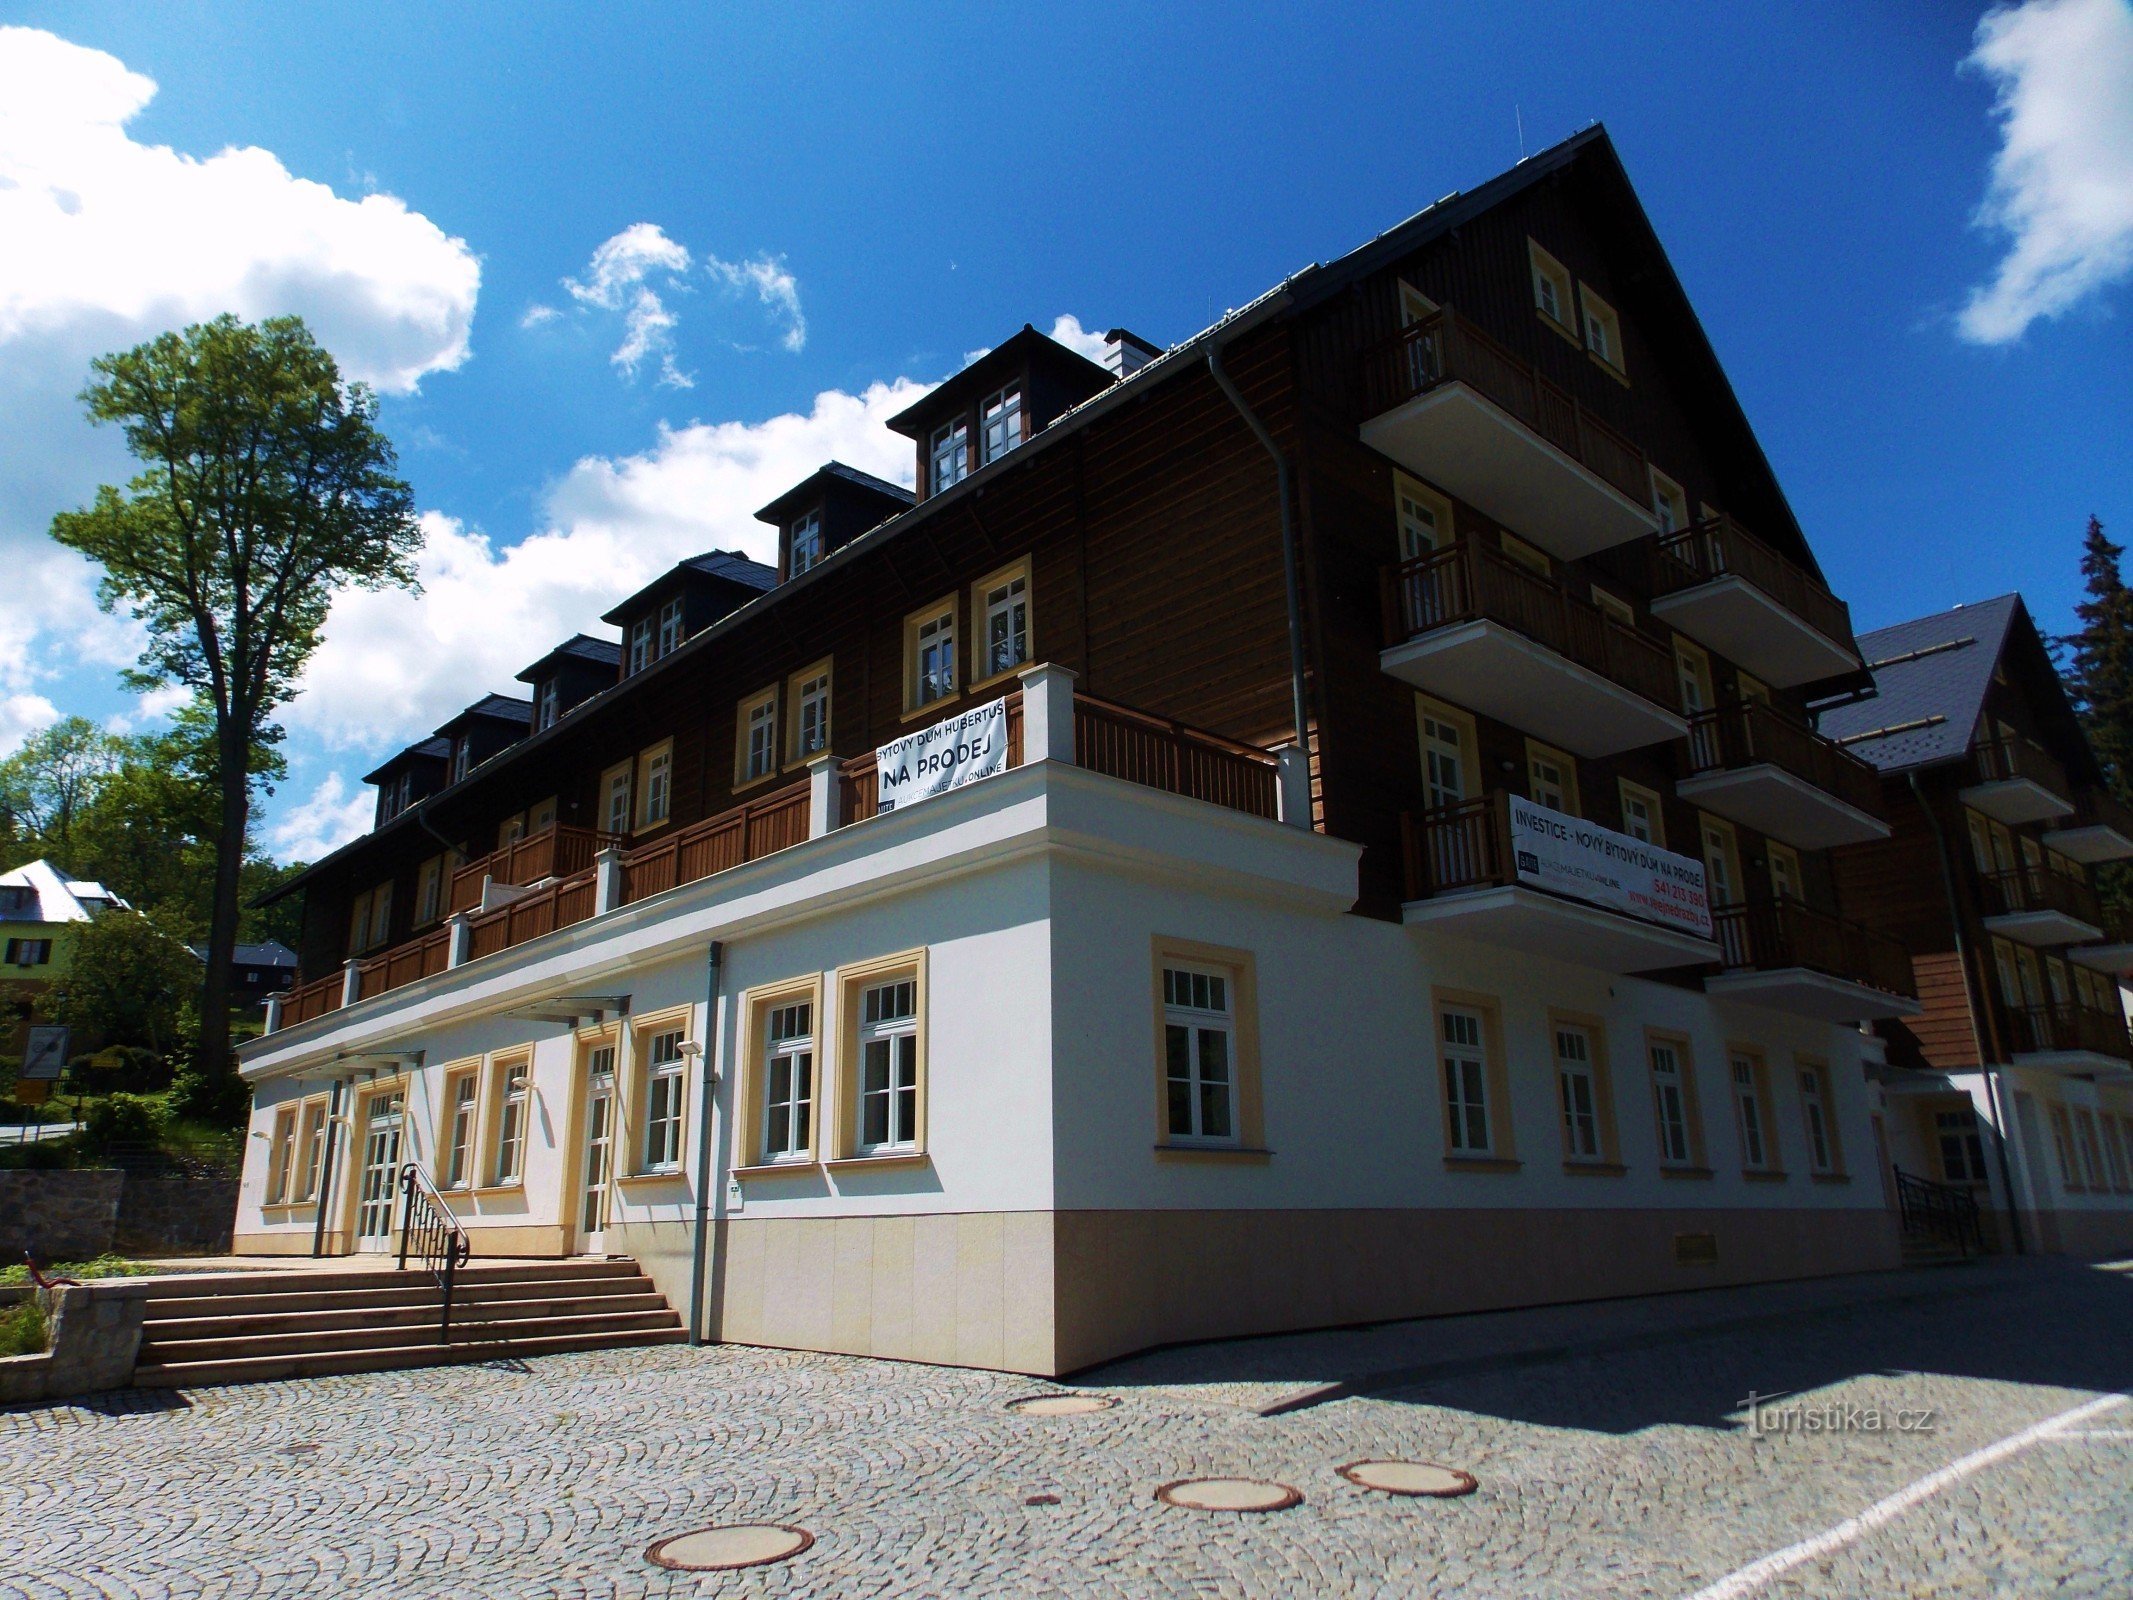 Das legendäre Hotel Hubertus in Karlová Studánka